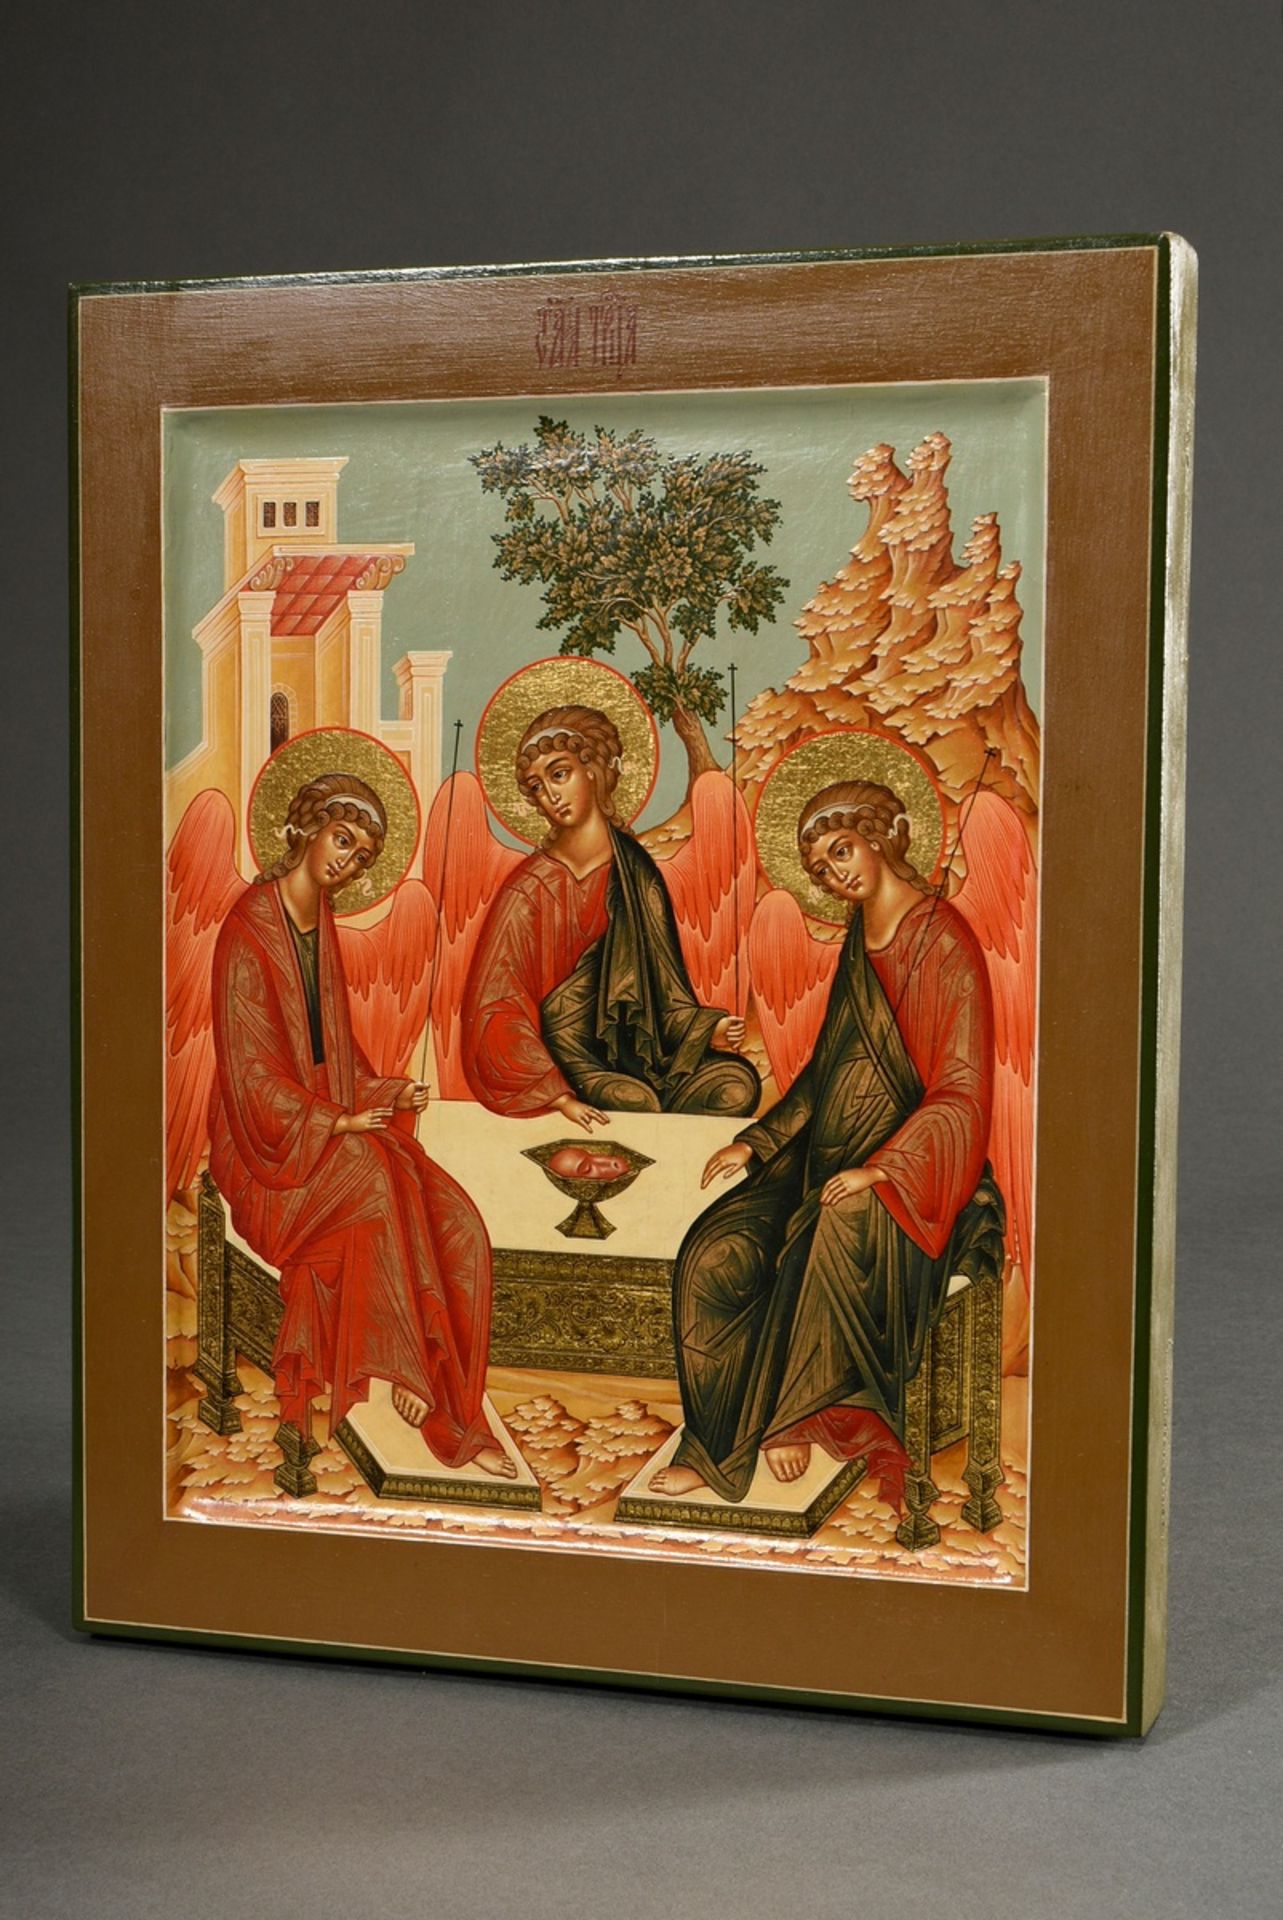 Russische Ikone "Heilige Dreifaltigkeit", alttestamentlicher Typus, 2002 nach altem Vorbild gemalt,